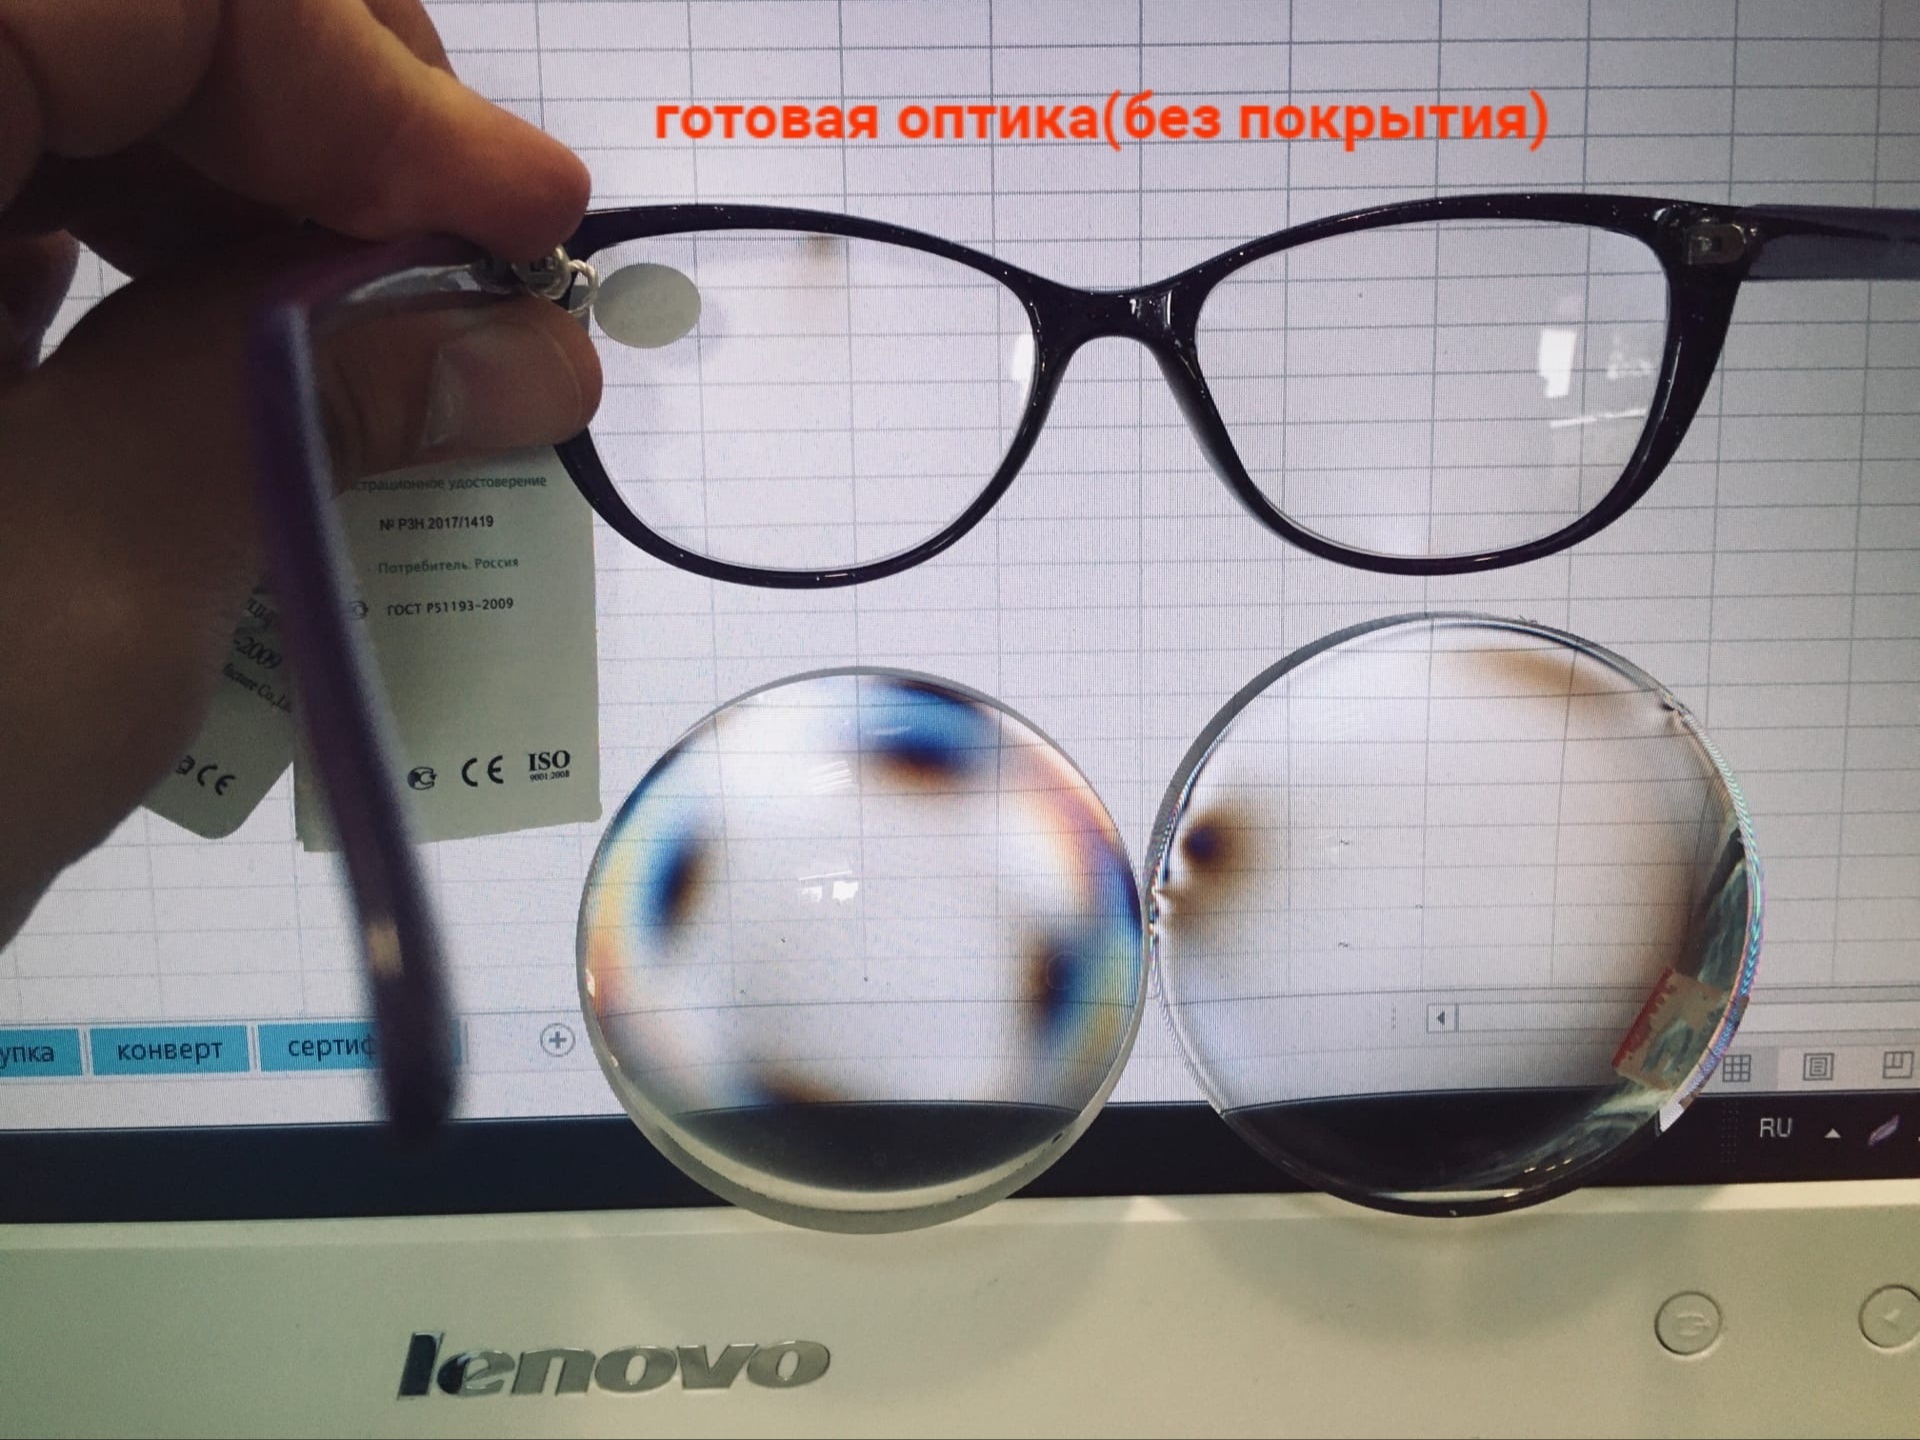 Как проверить очки на подлинность